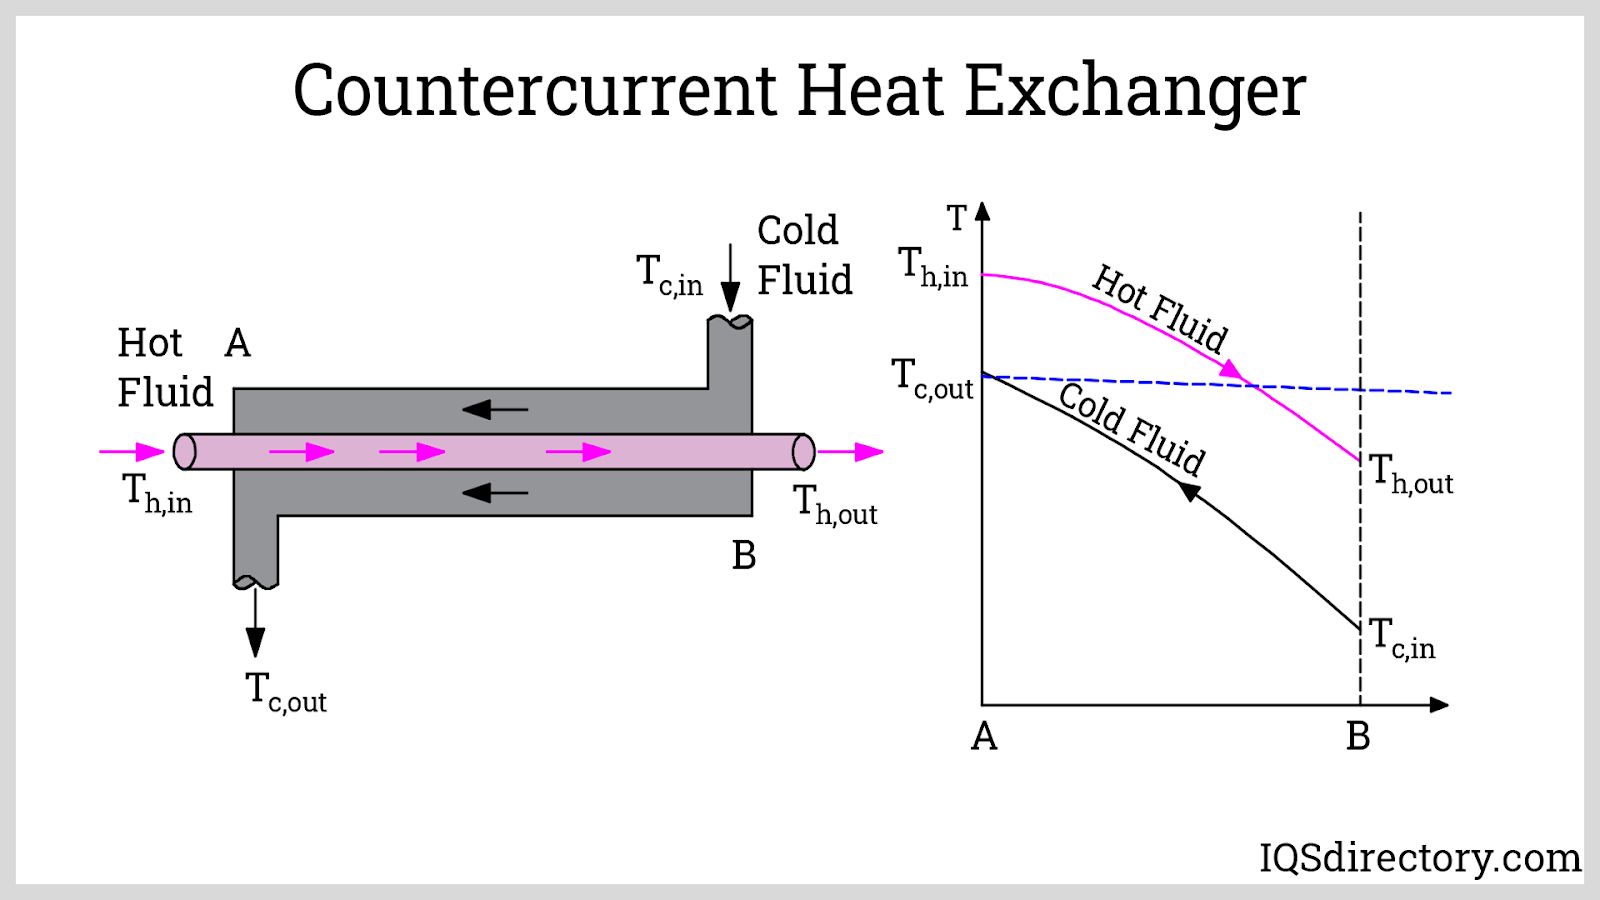 Countercurrent Heat Exchanger